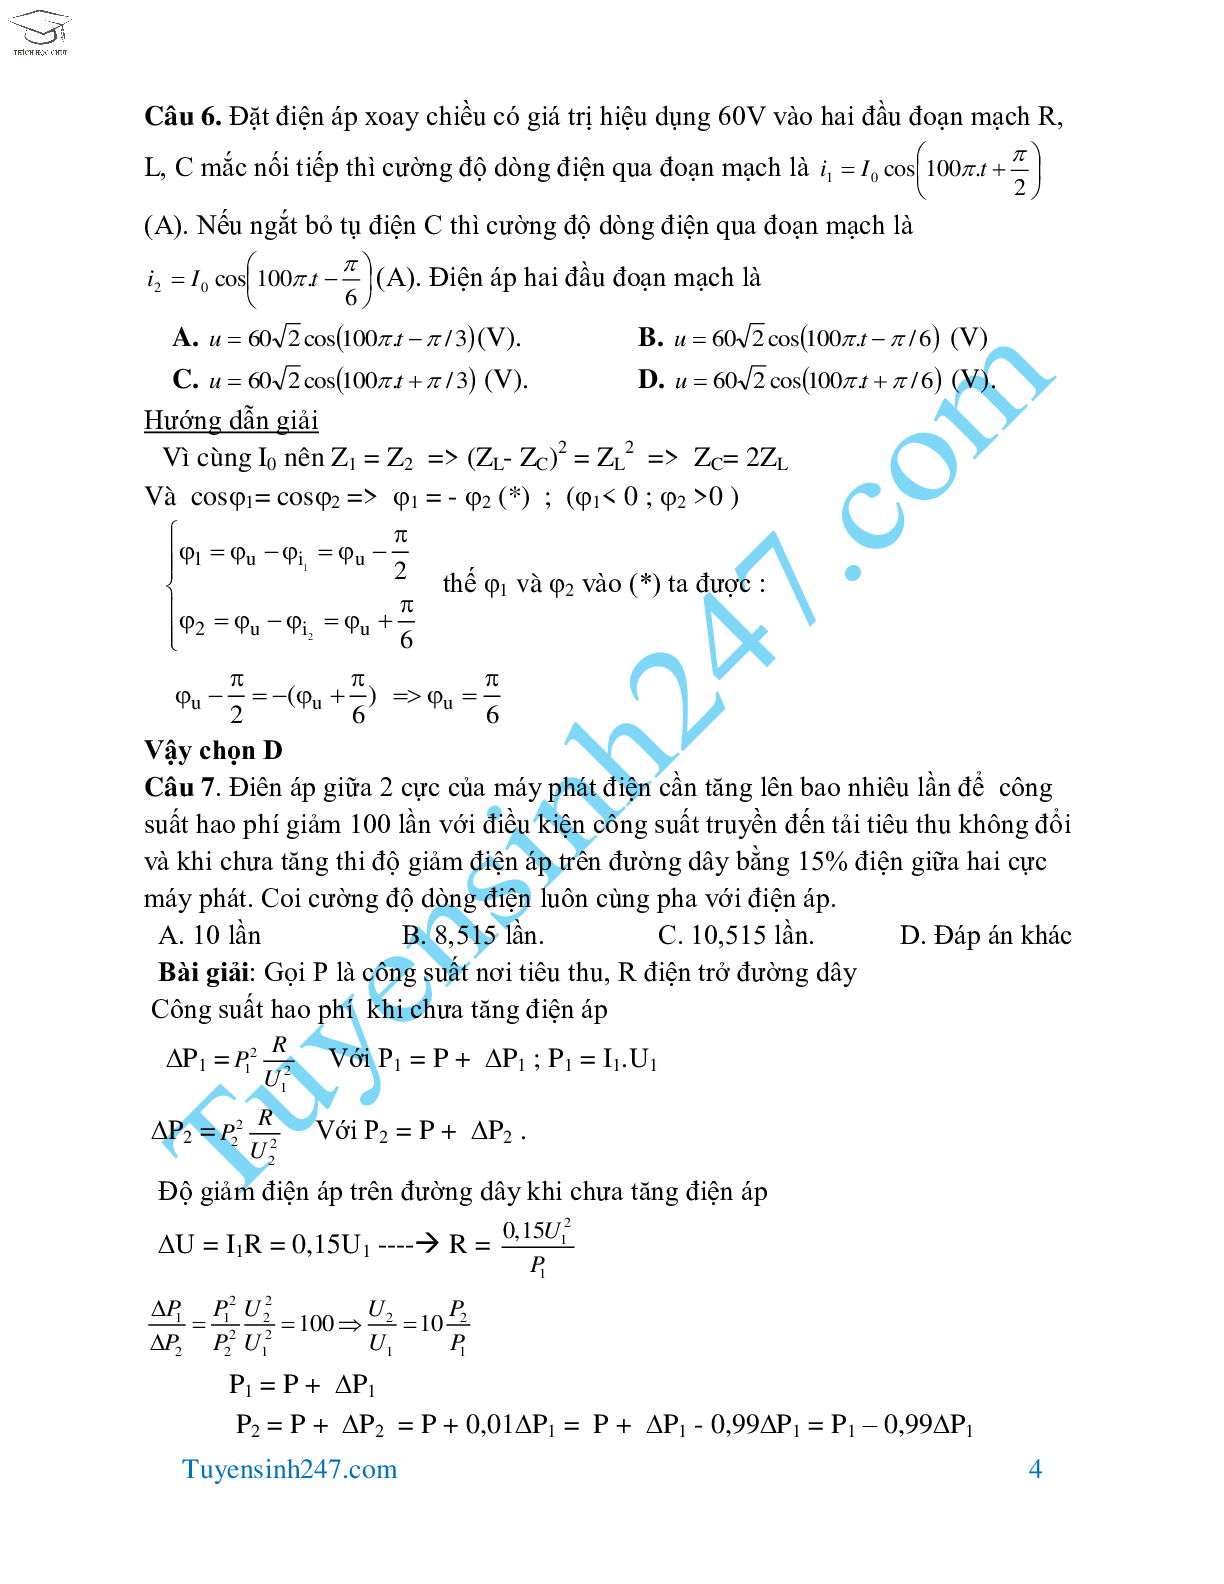 70 bài tập dòng điện xoay chiều hay và khó môn Vật Lý lớp 12 (trang 4)